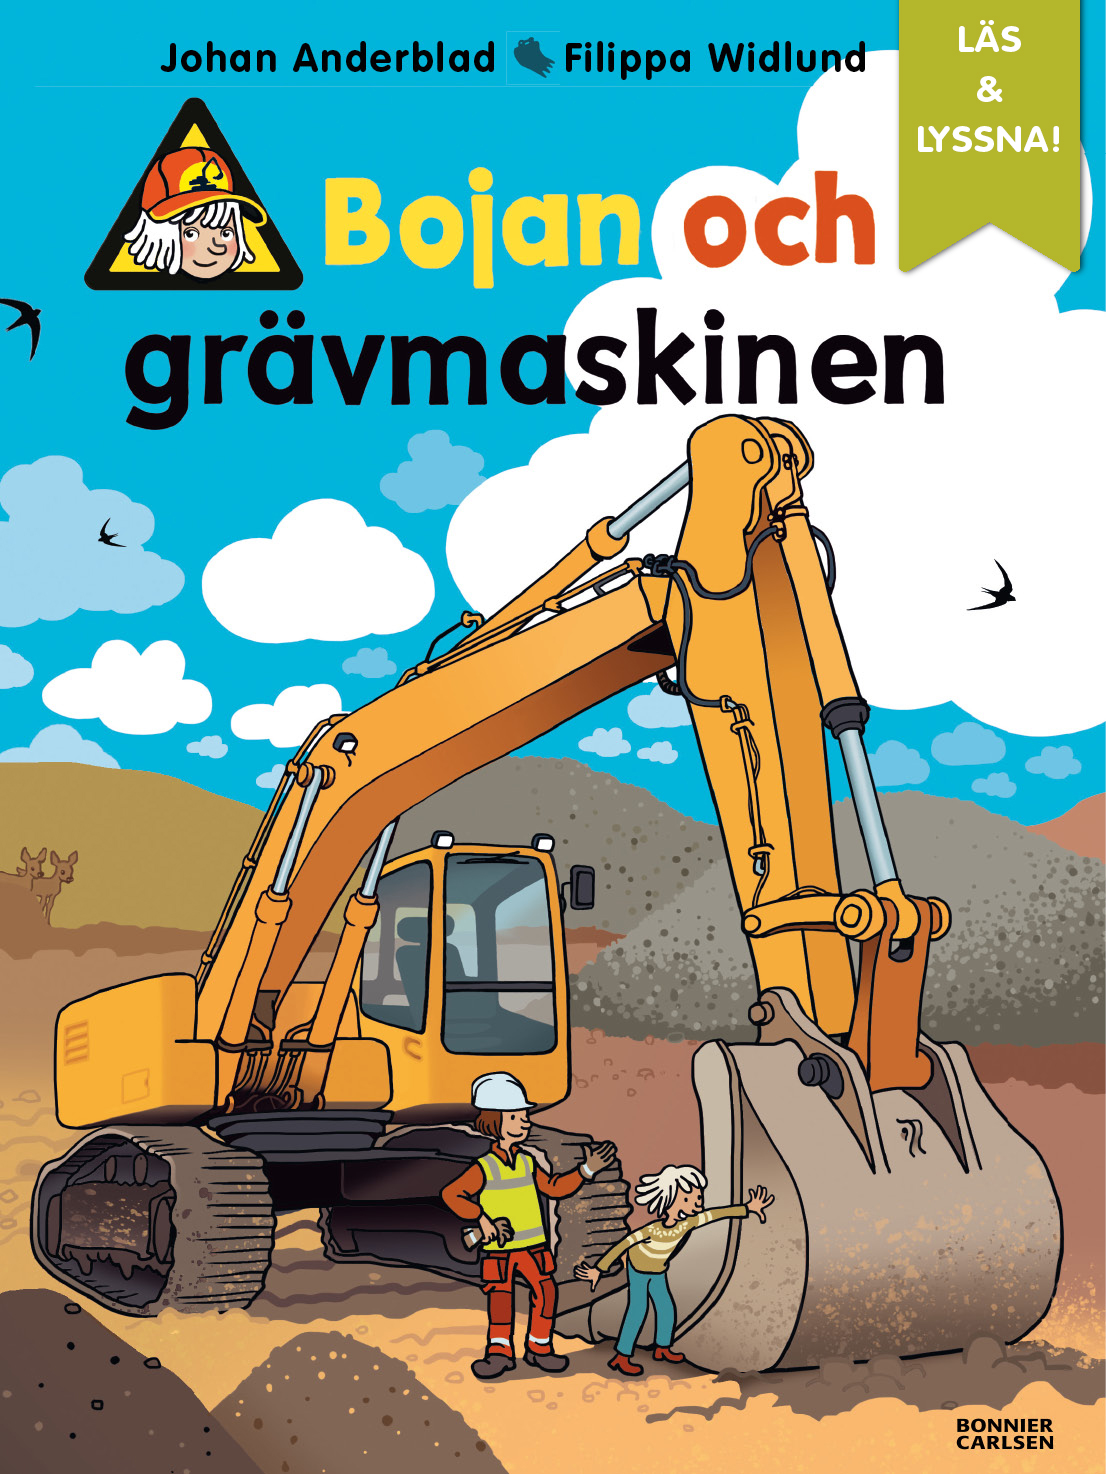 Bokomslag för barnboken 'Bojan och grävmaskinen' av Johan Anderblad